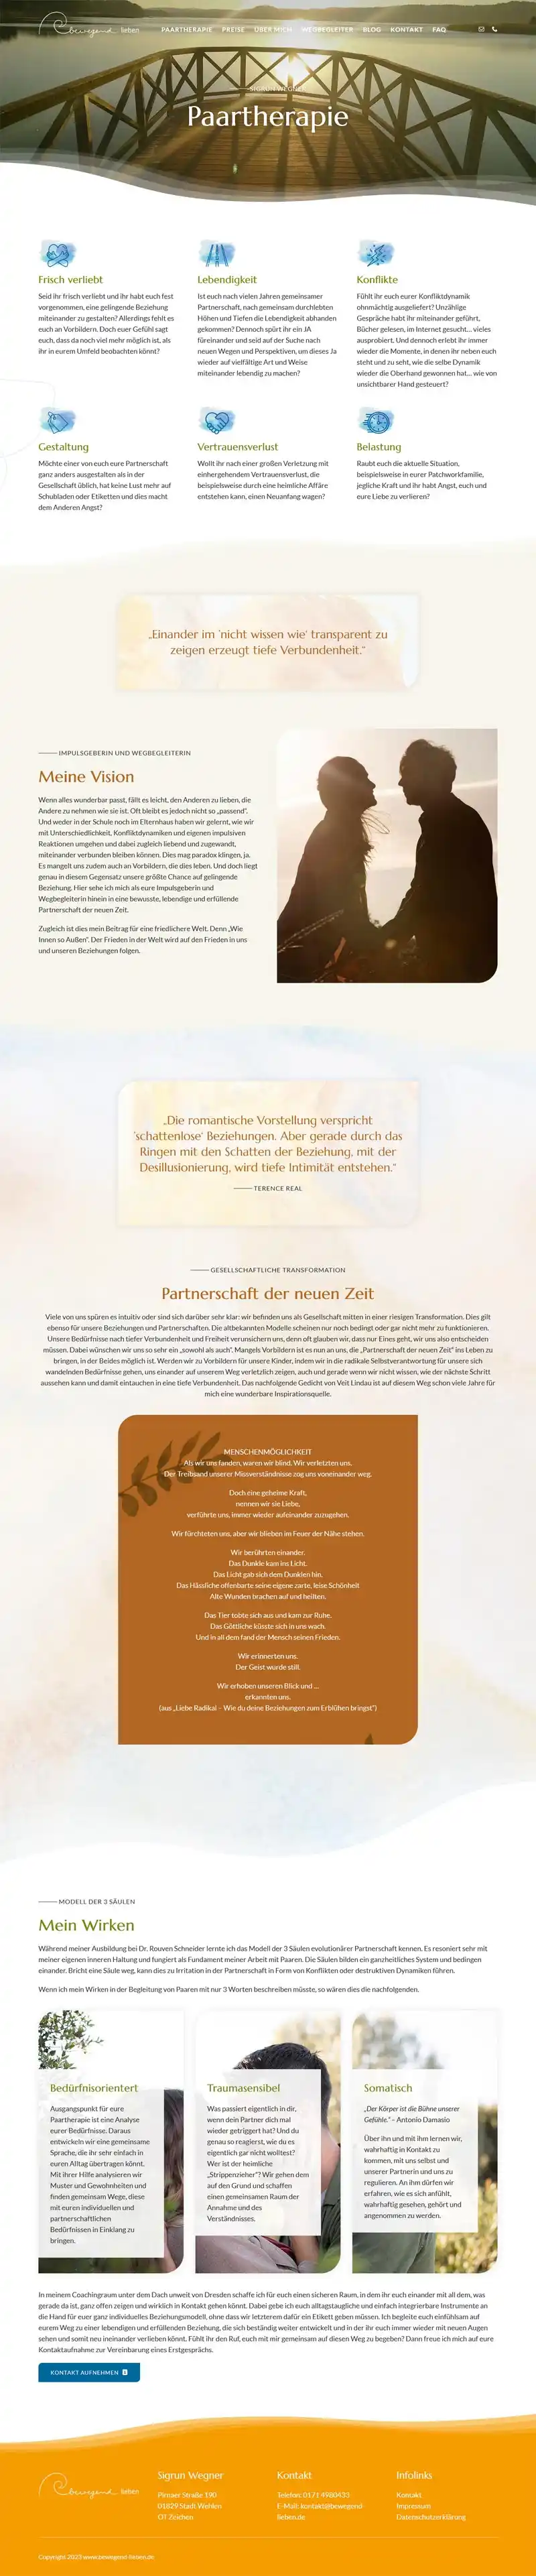 Bewegend lieben - Paartherapie mit Sigrun Wegner - Screenshot Fullsize Unterseite